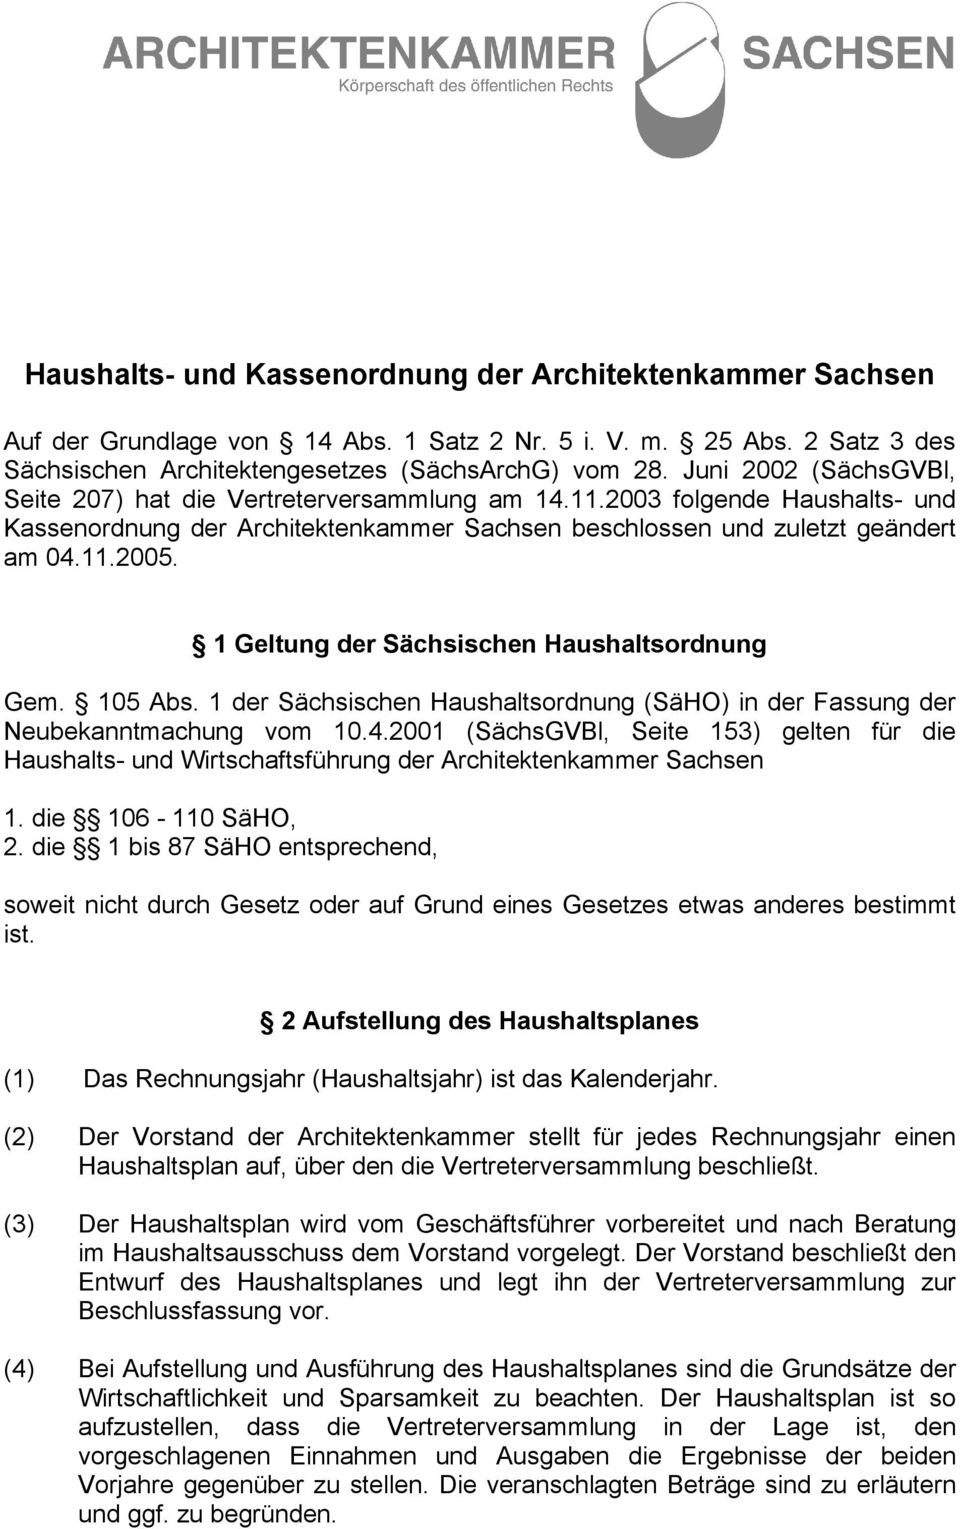 1 Geltung der Sächsischen Haushaltsordnung Gem. 105 Abs. 1 der Sächsischen Haushaltsordnung (SäHO) in der Fassung der Neubekanntmachung vom 10.4.